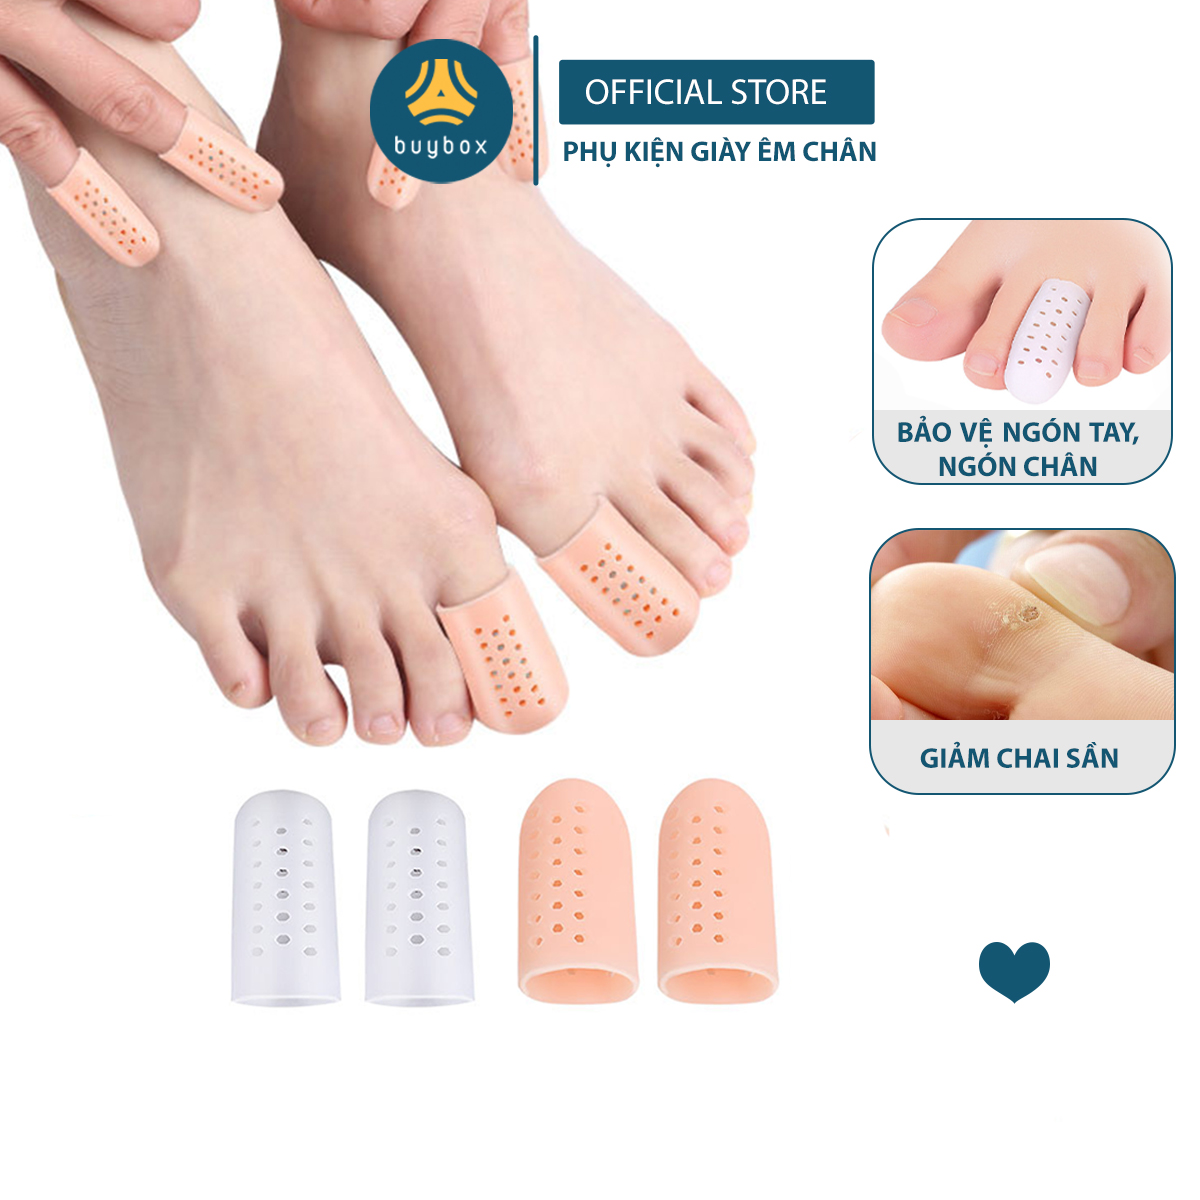 Silicone bọc ngón chân cái bảo vệ ngón chân, móng chân khi mang giày